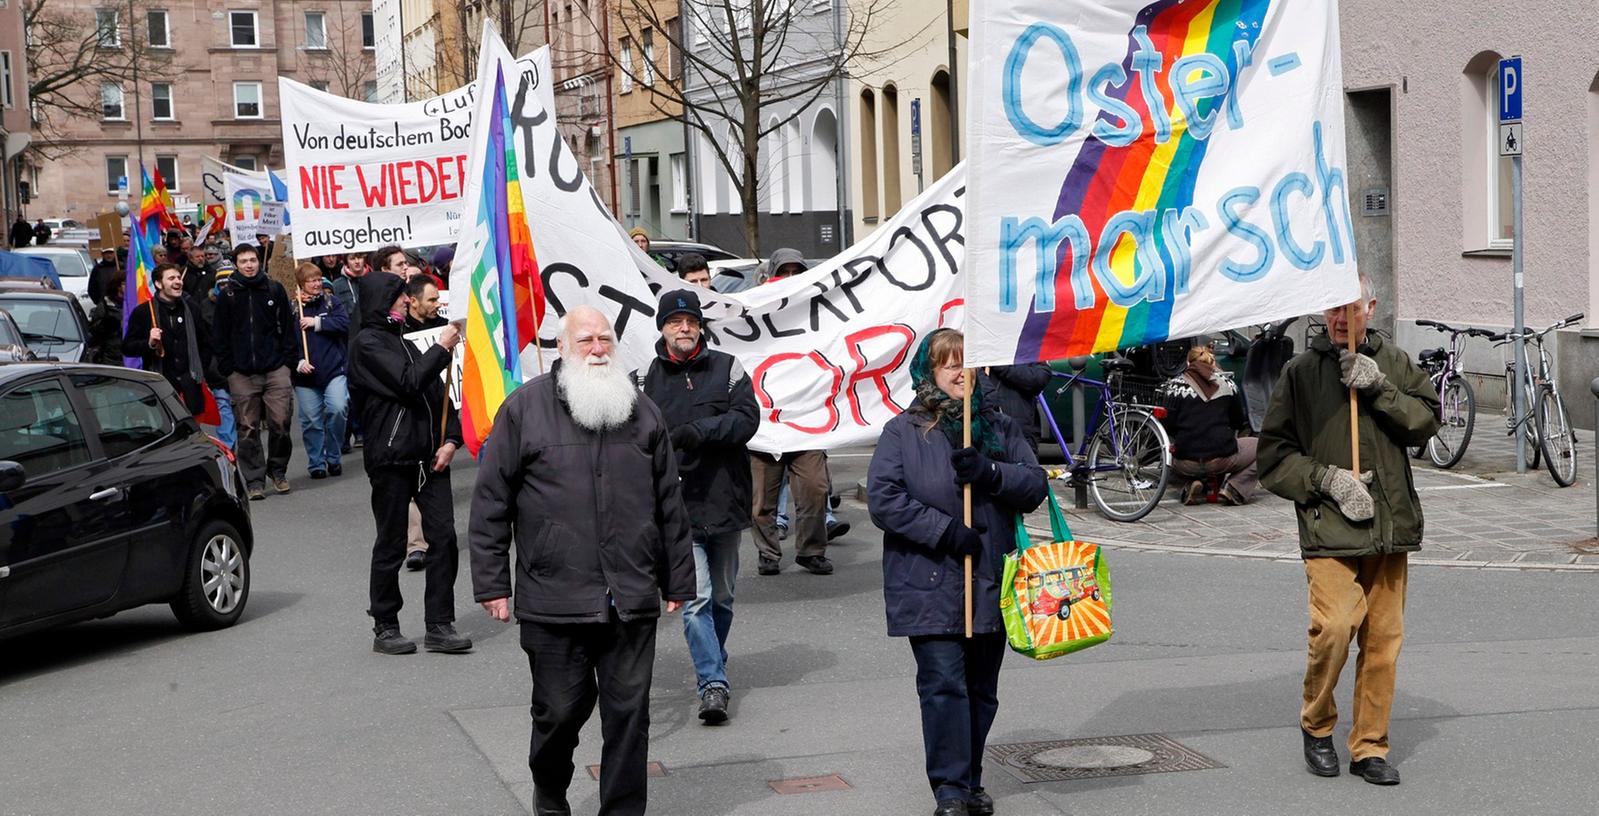 Hunderte Friedensaktivisten haben am Montag beim traditionellen Ostermarsch in Nürnberg unter anderem gegen hohe Mietpreise, Gewalt und Militarismus demonstriert.